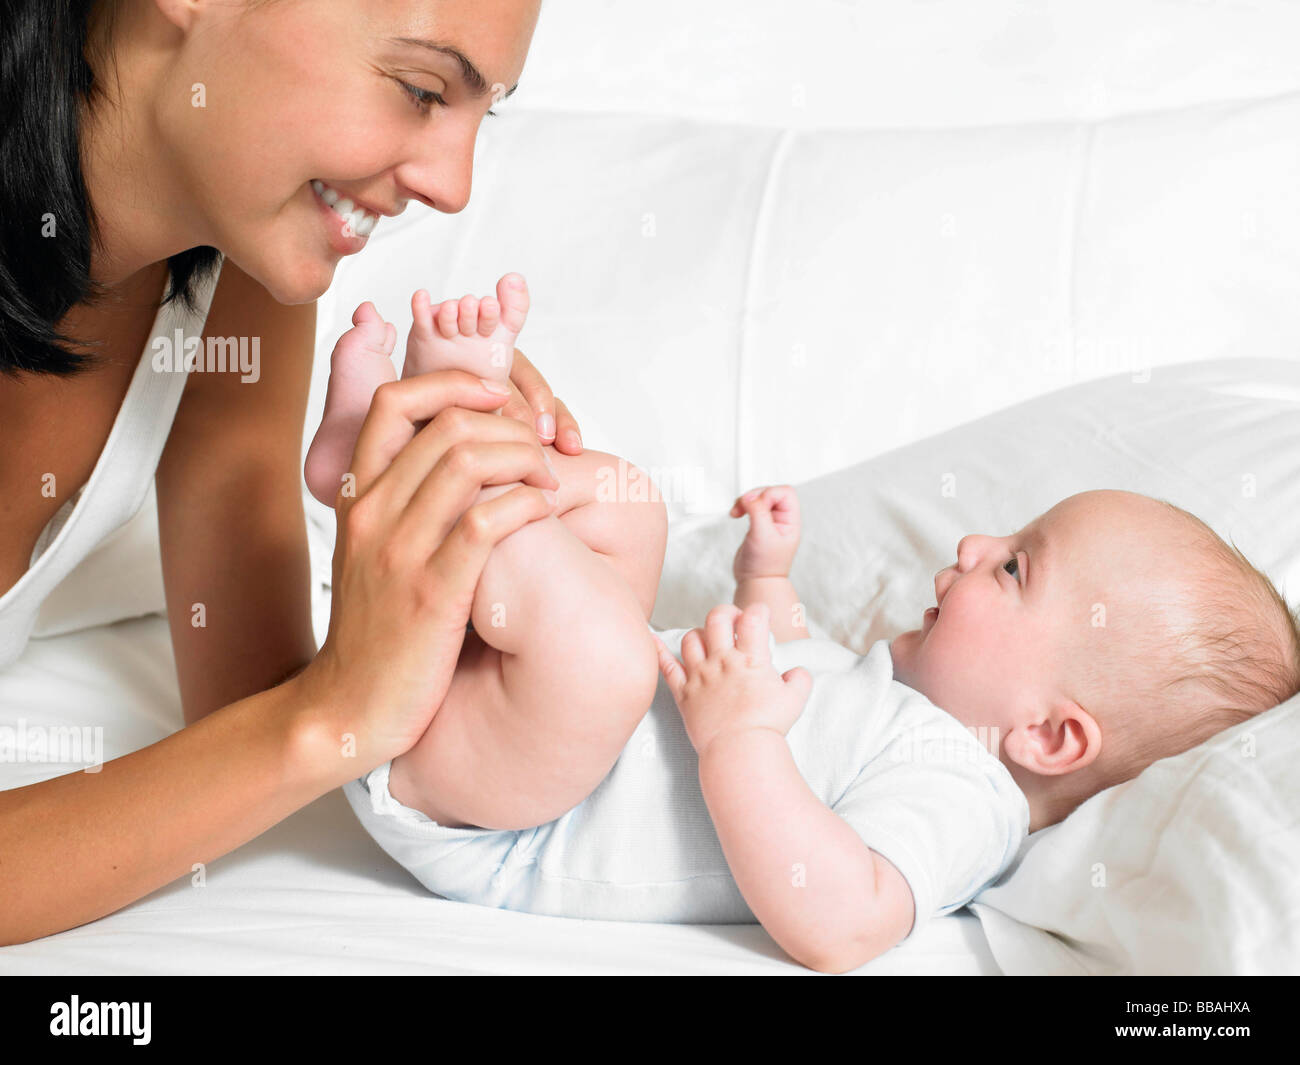 Целовал ноги маме. Мама целует ножки малышу. Фото мама целует ножки малыша. Мать и дитя целует ножку. Ребенок целует ноги маме.